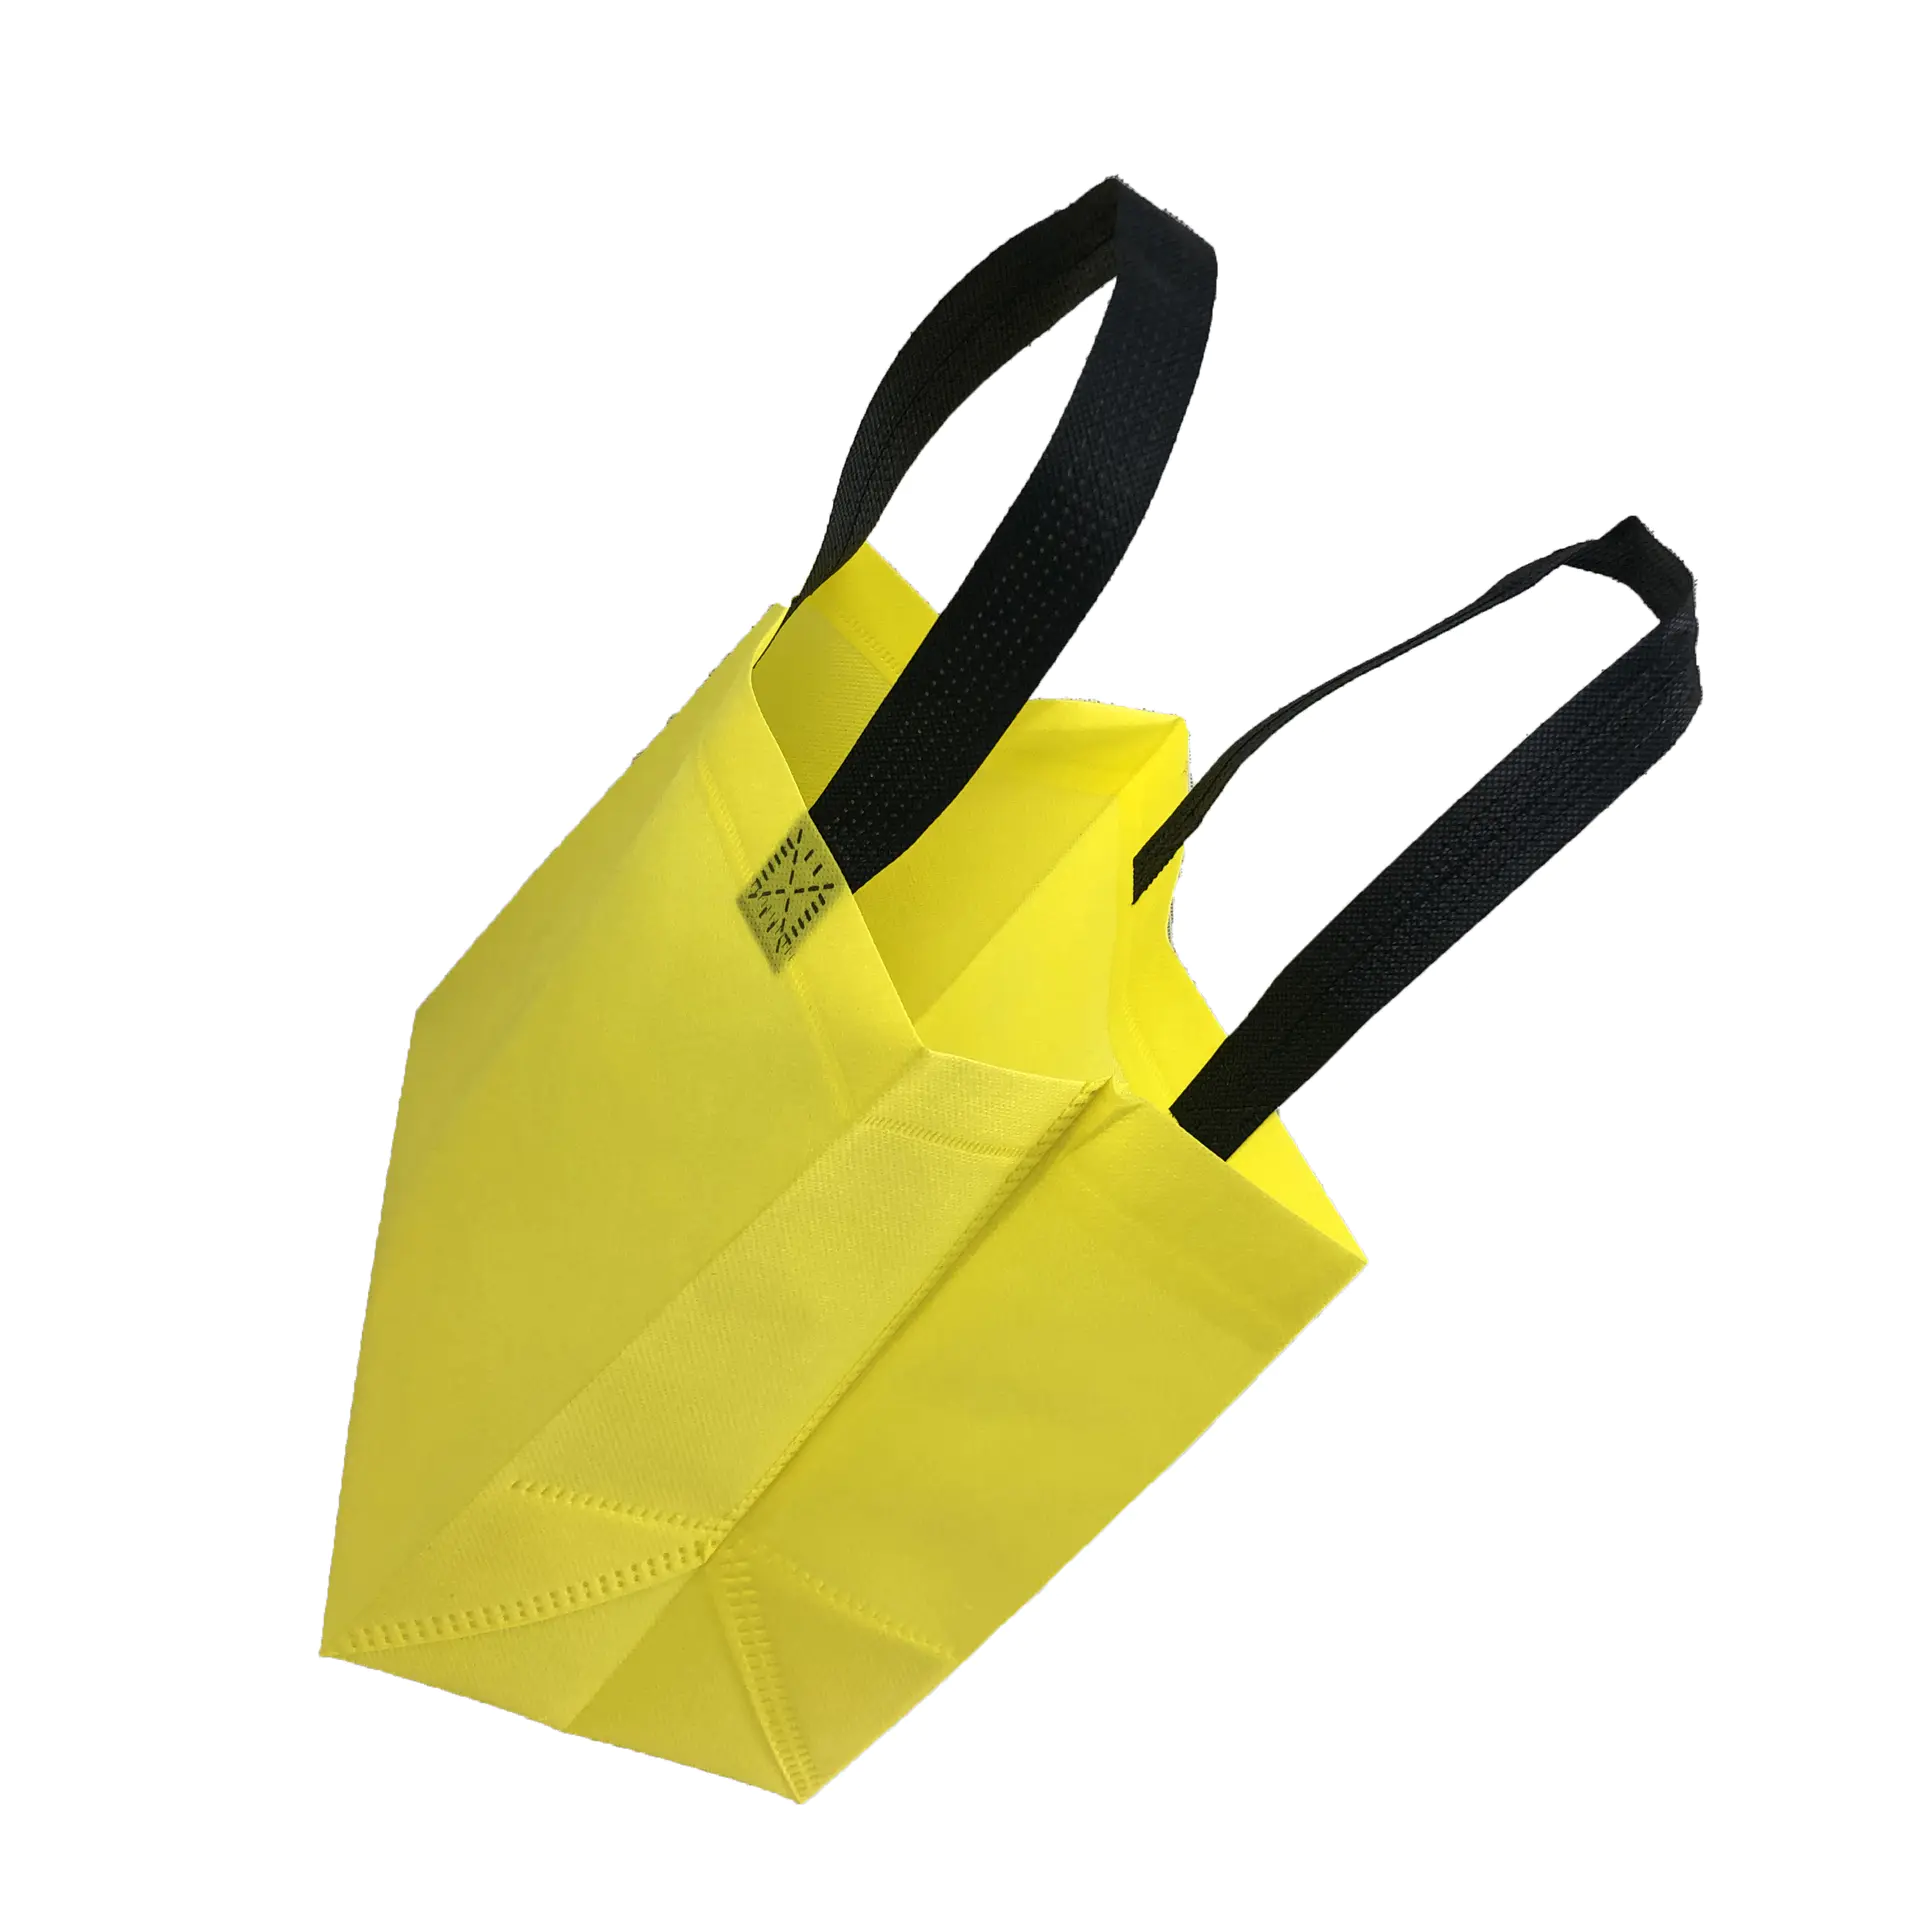 Yellow Eco-Friendly Shopping Bag Woven Bag Nonwoven Polypropylene